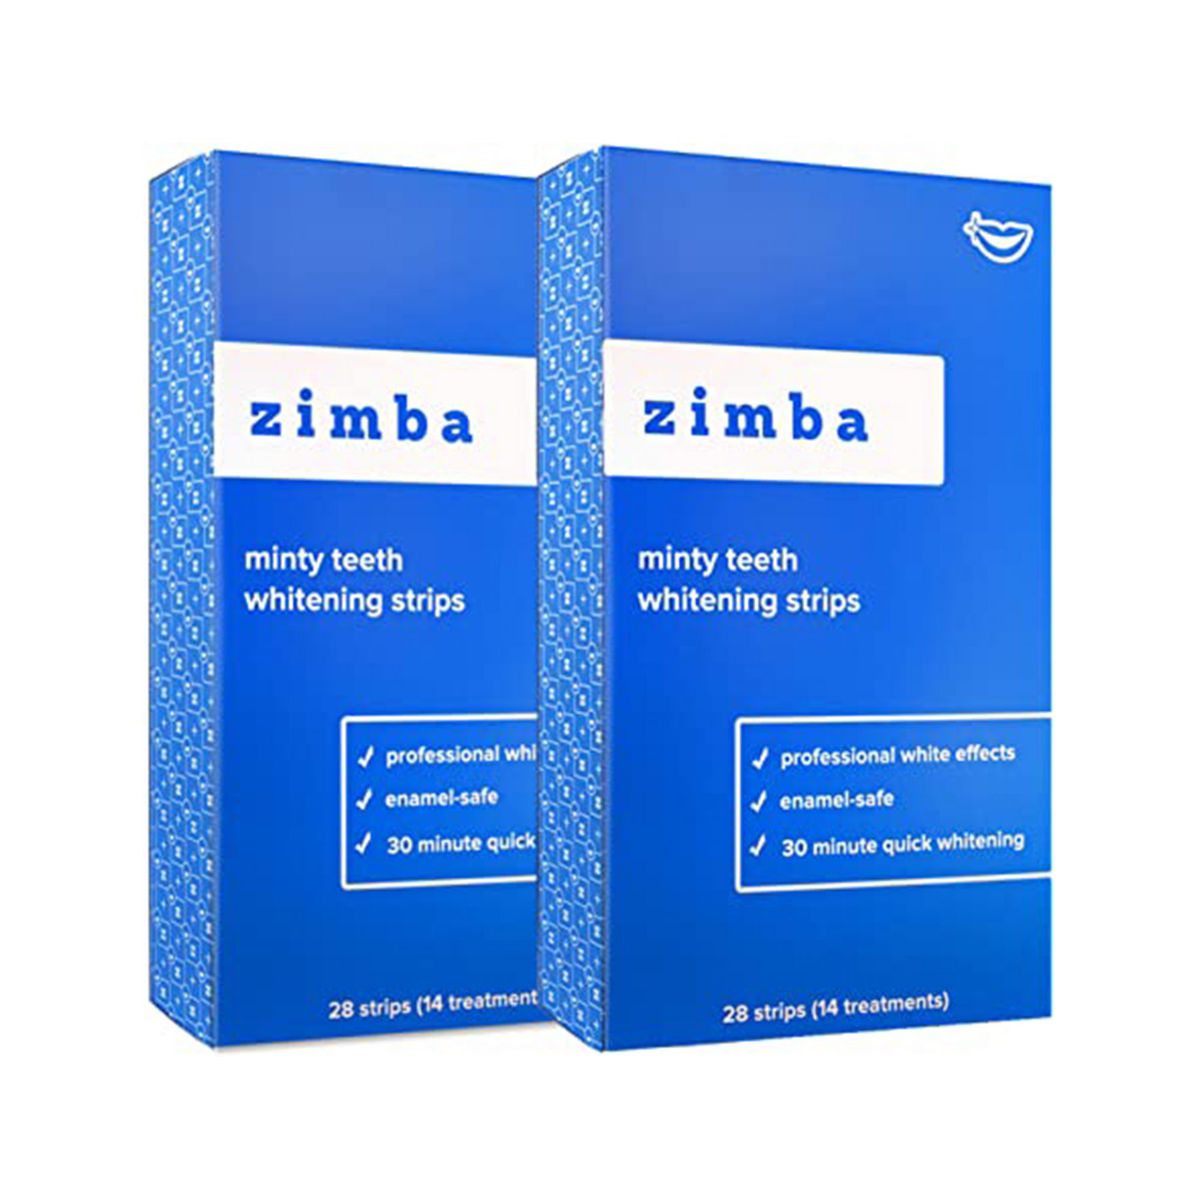 Zimba-Teeth-Whitening-Strips-Product